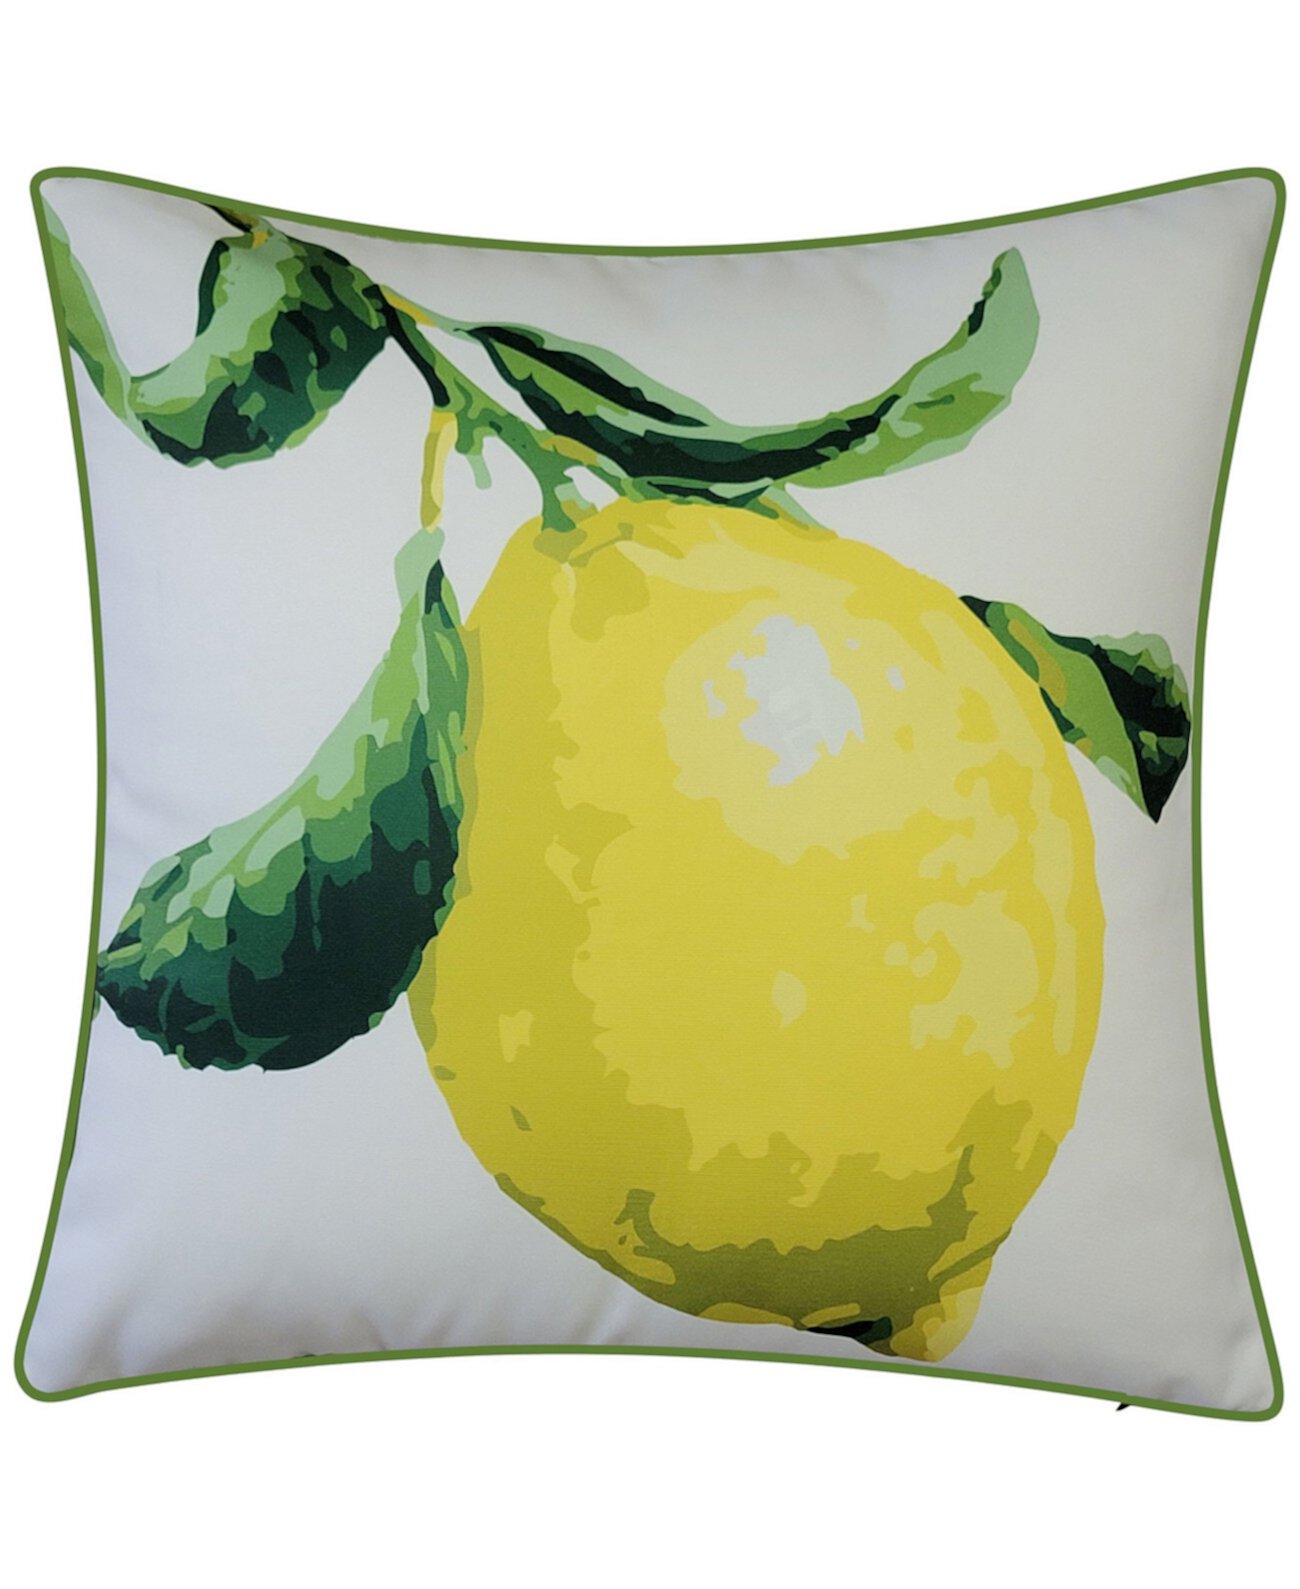 NYBG Большая декоративная подушка с лимонным принтом для дома и улицы, 20 x 20 дюймов Edie@Home